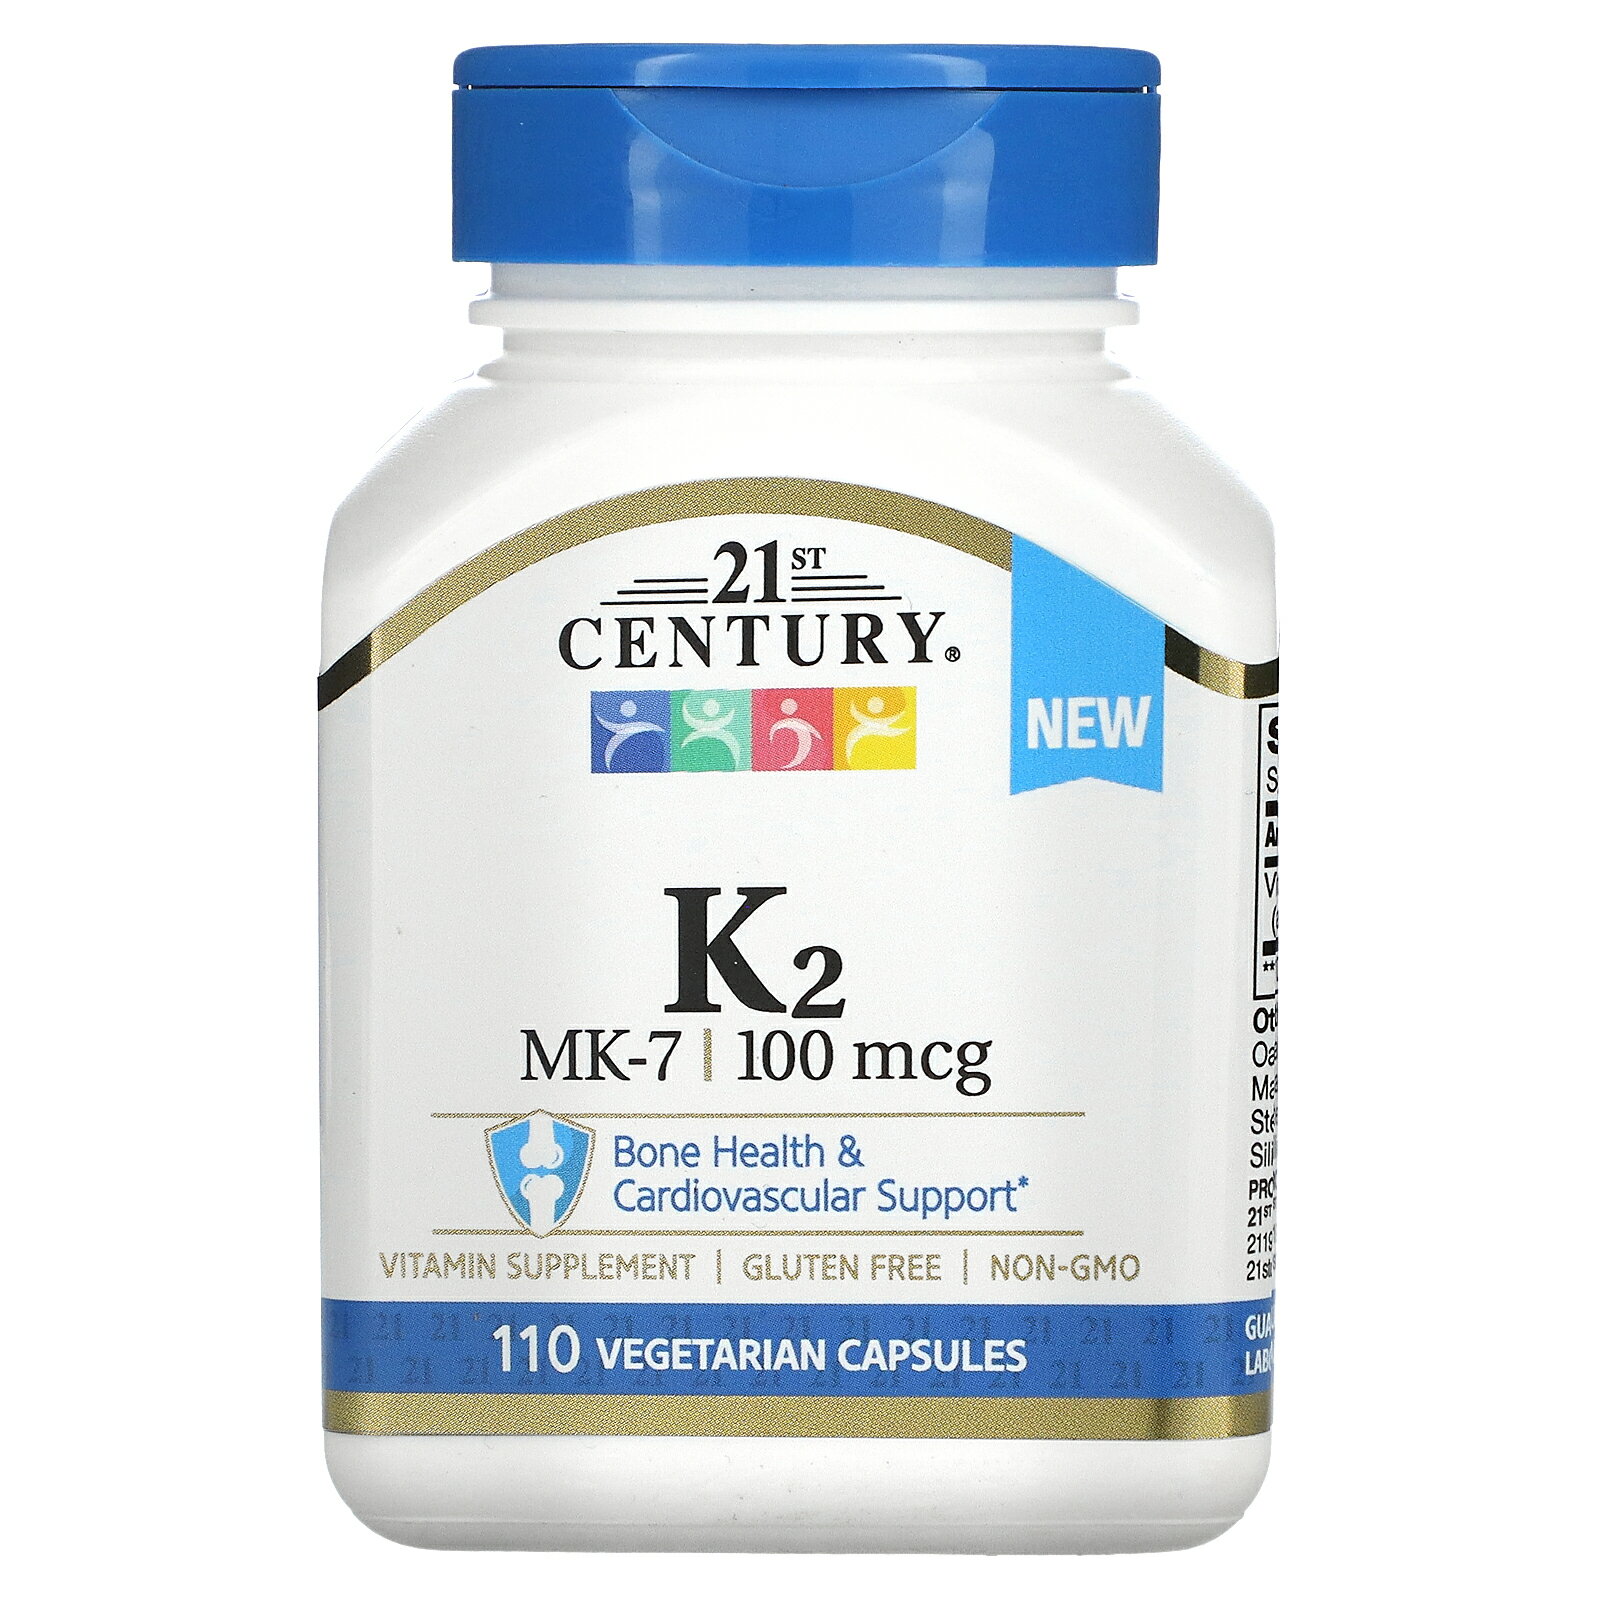 21st Century ビタミンK2 【 iHerb アイハーブ 公式 】 21st センチュリー ビタミン K2 ビタミン類 ビタミンK MK-7 …